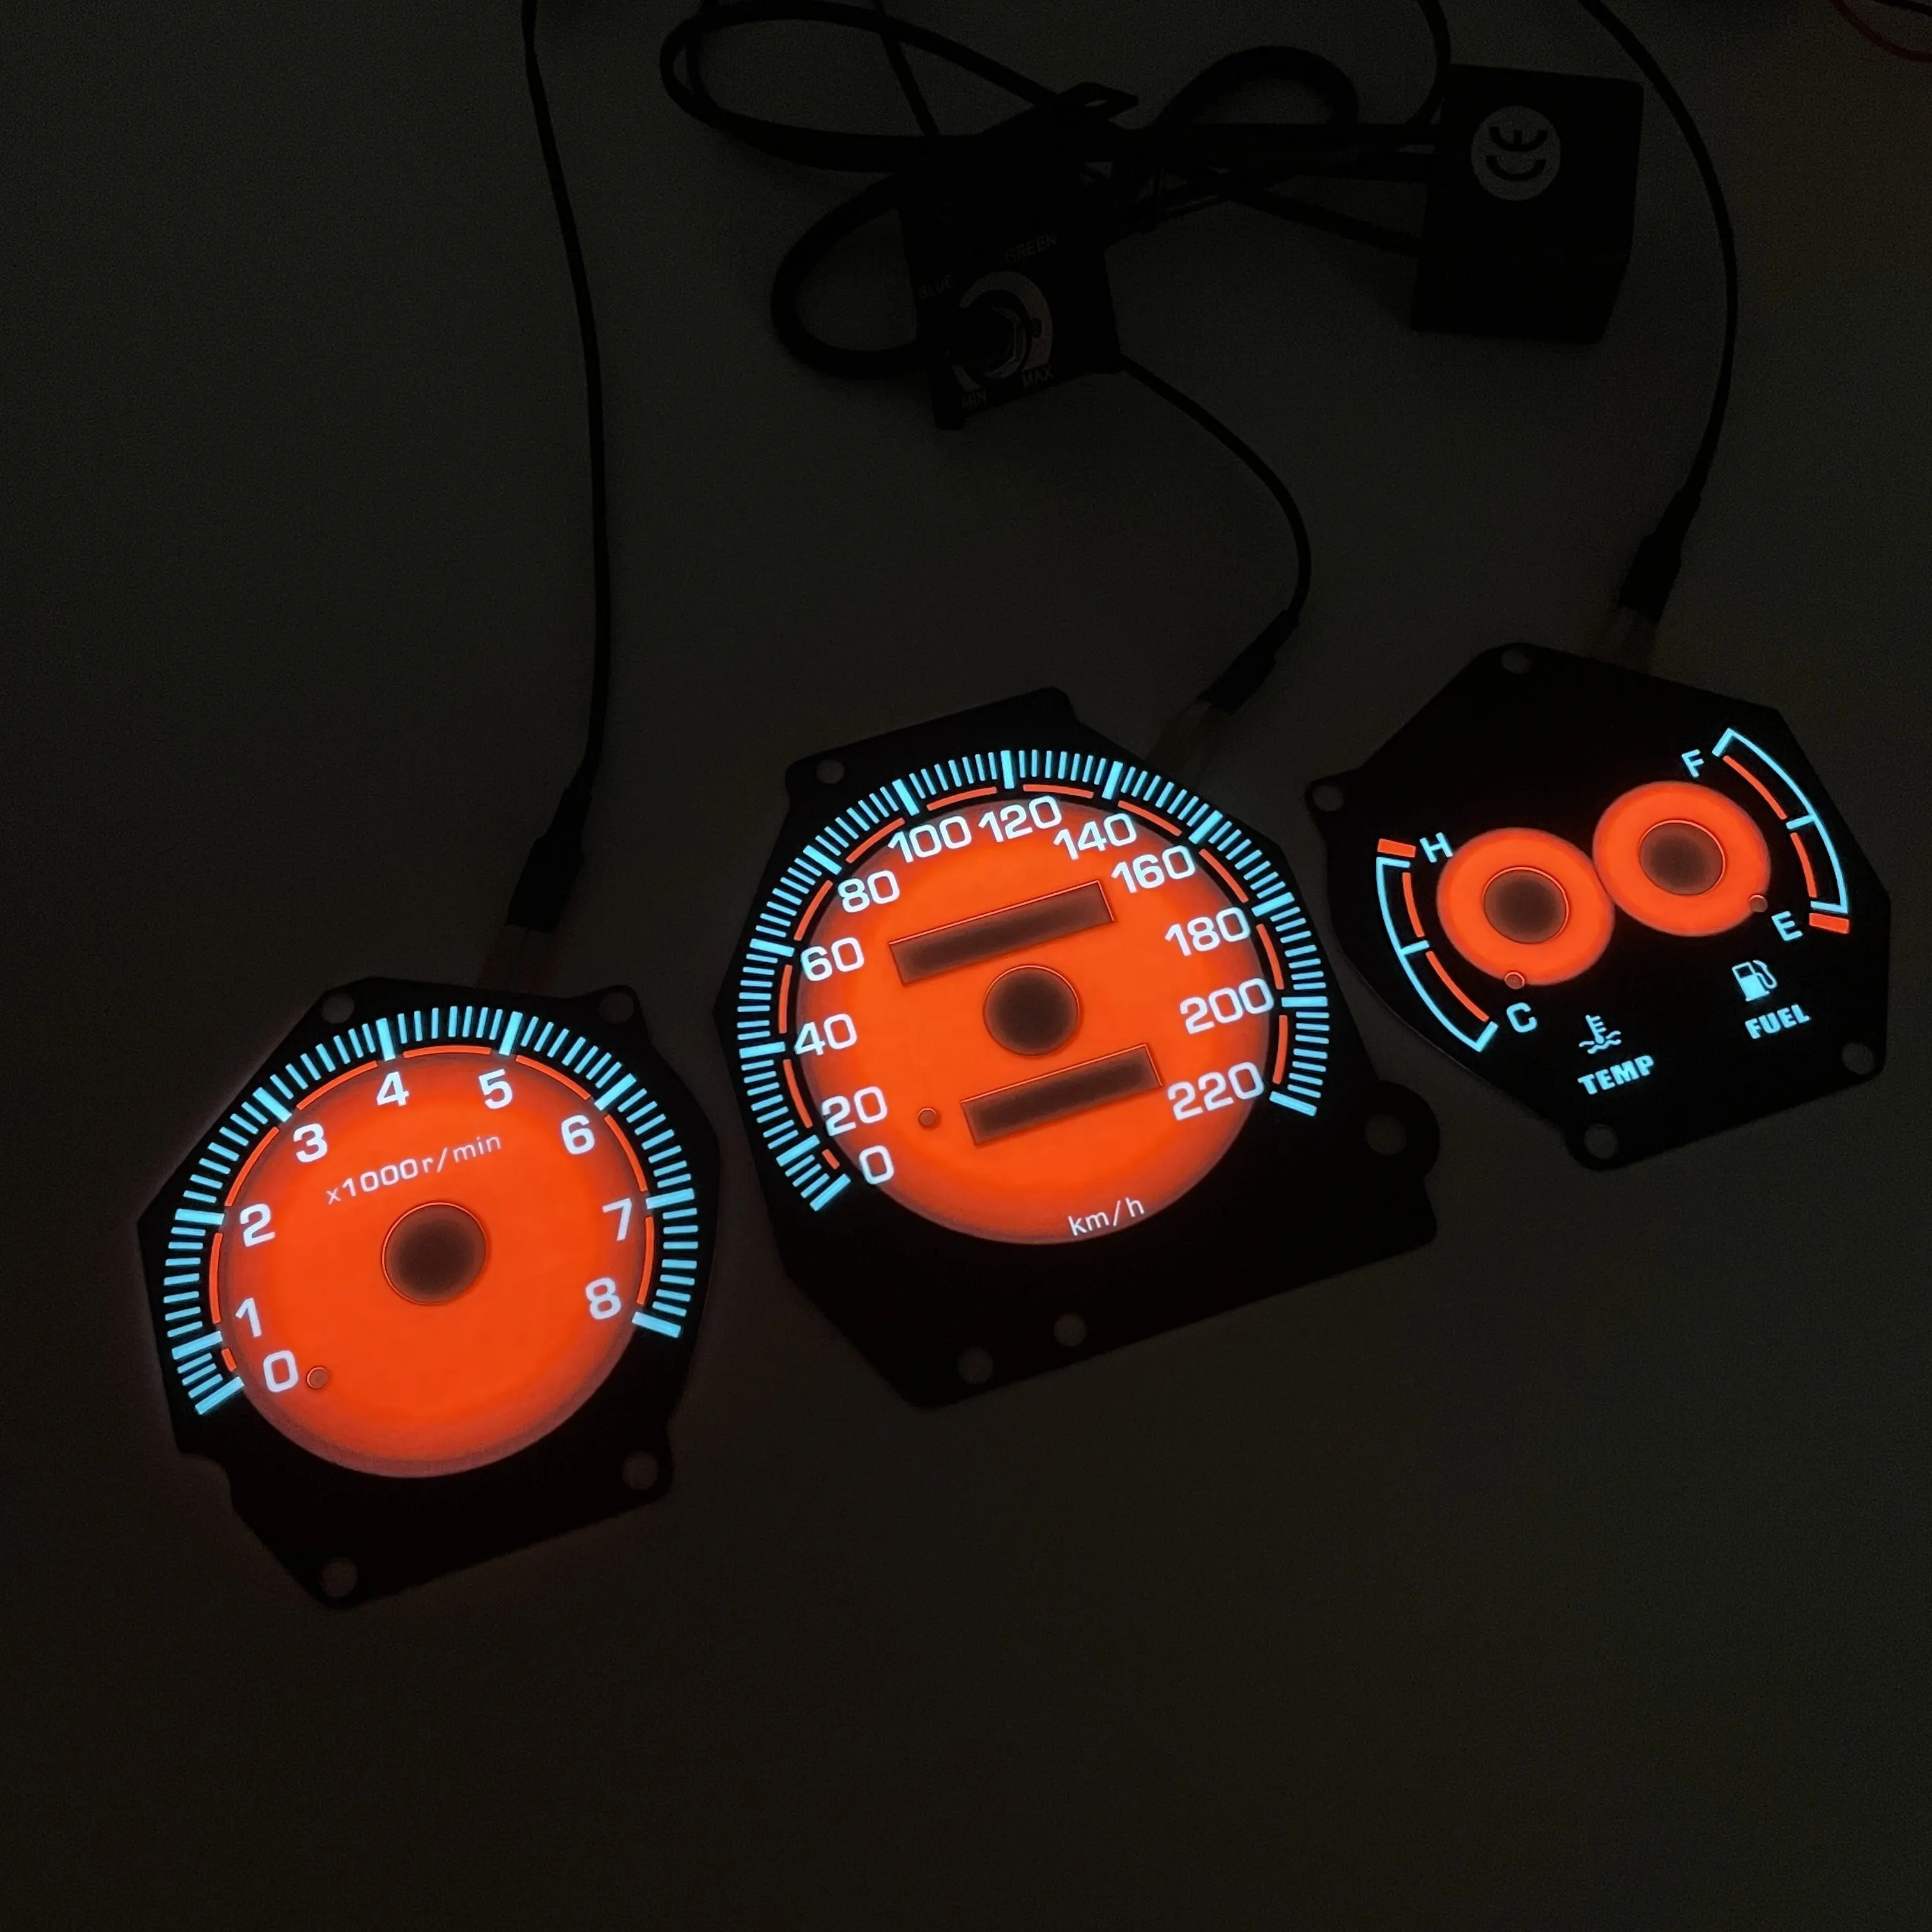 Ool lighting-Indicadores de brillo personalizados para salpicadero de coche, medidores de luz roja radual con inversor de DC12 V ajustable